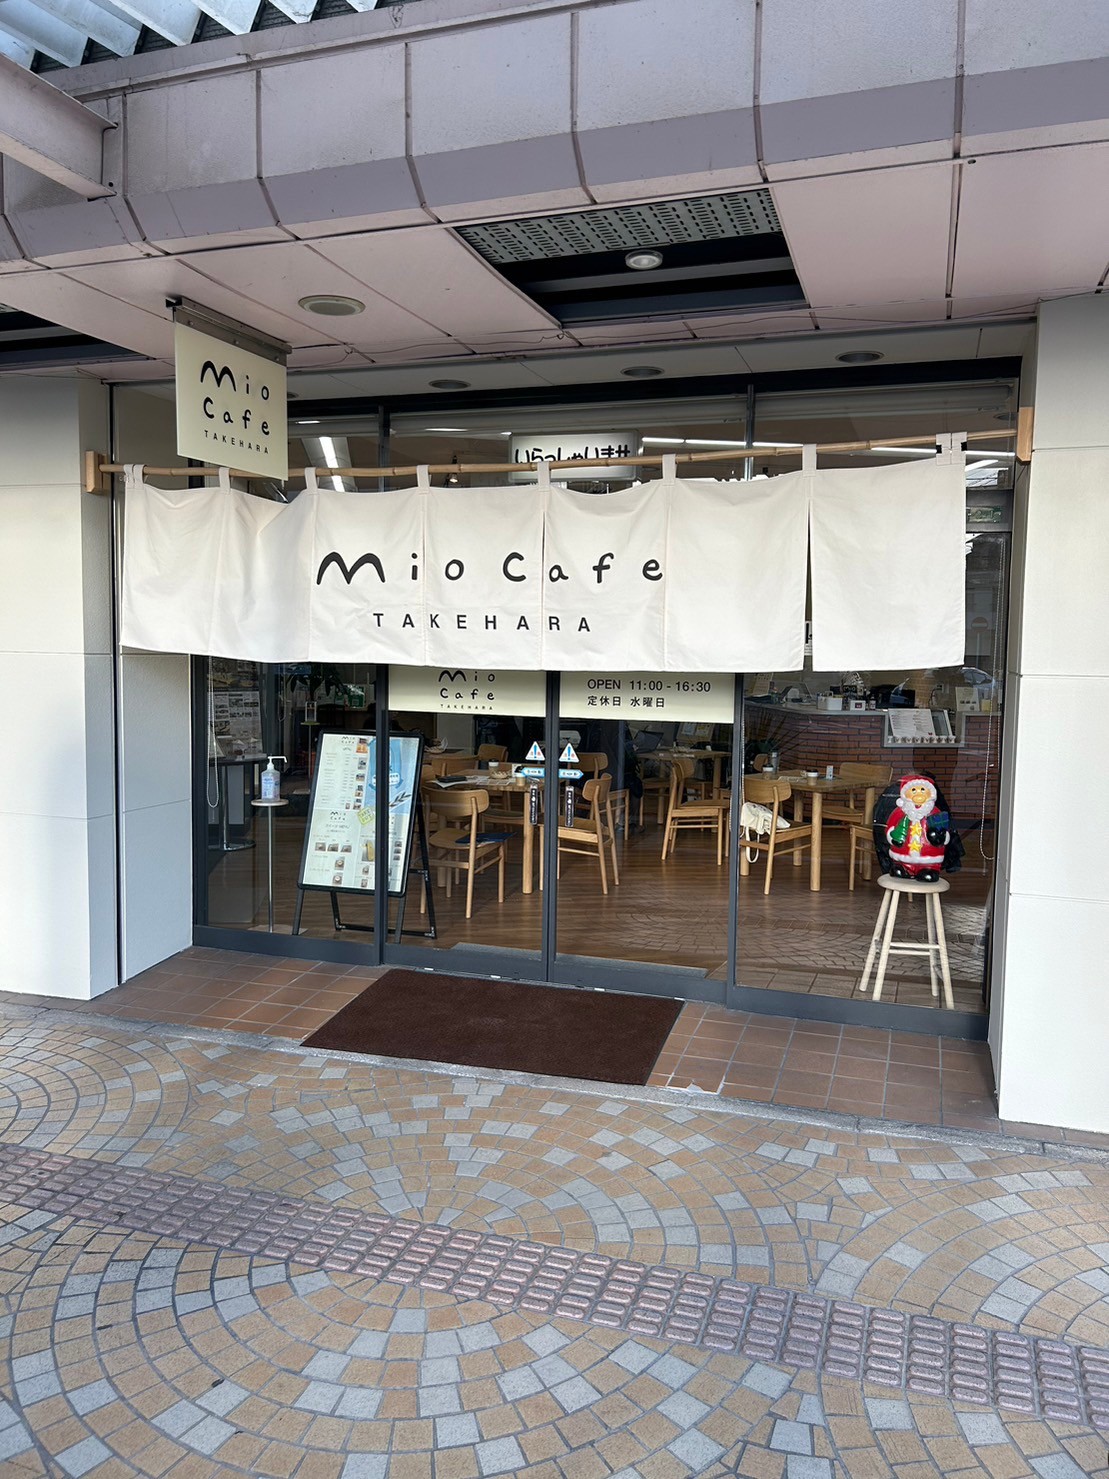 mio Café takehara's image 1